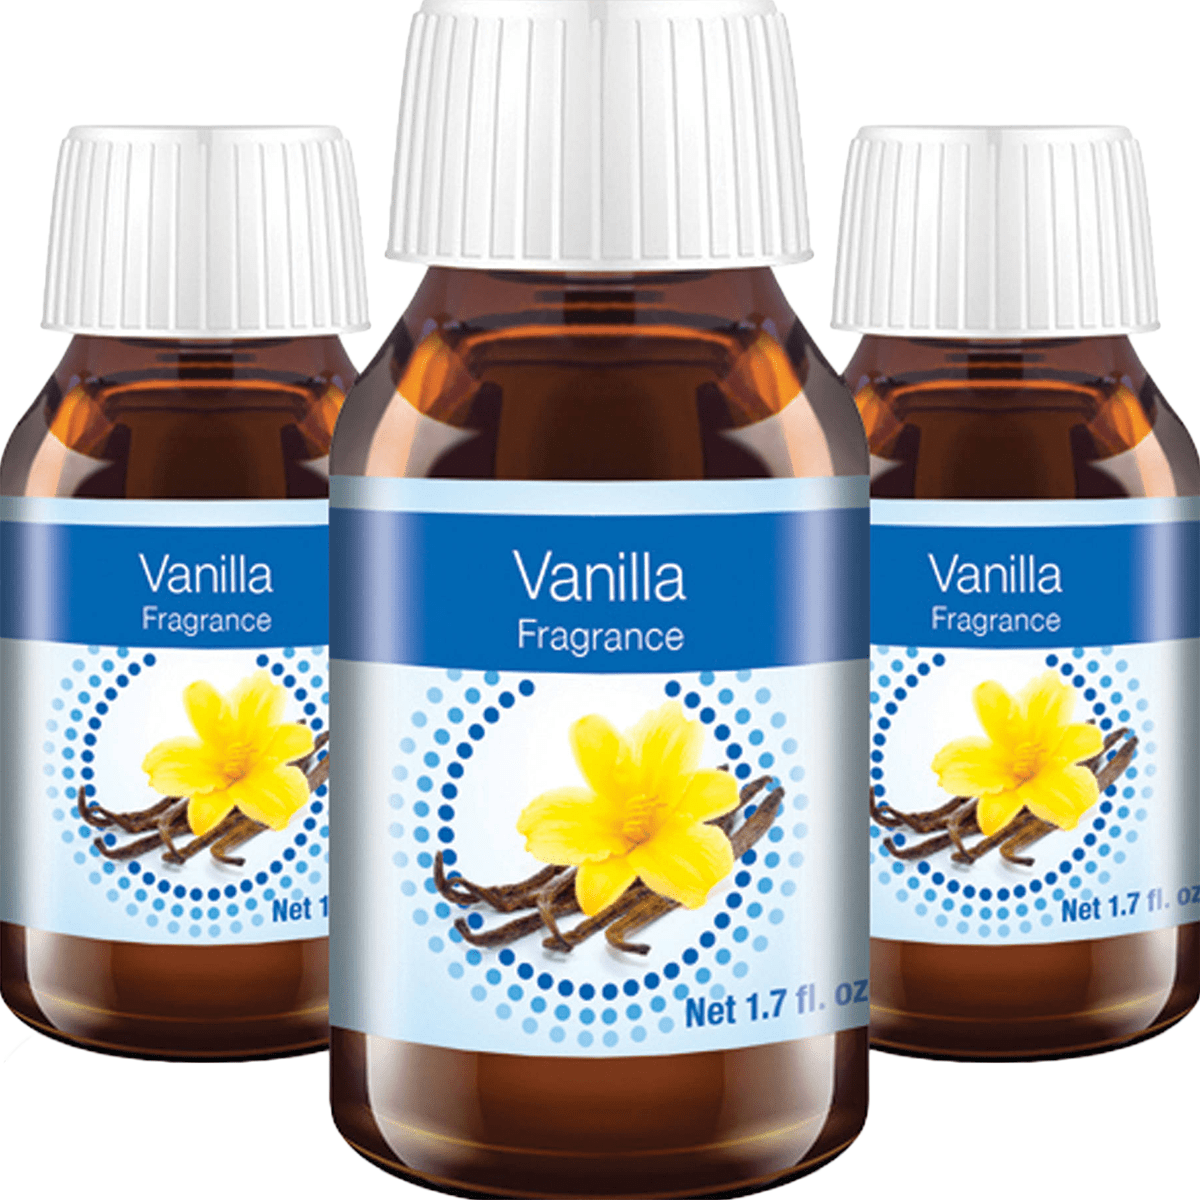 Venta Vanilla Fragrance - 3 Pack